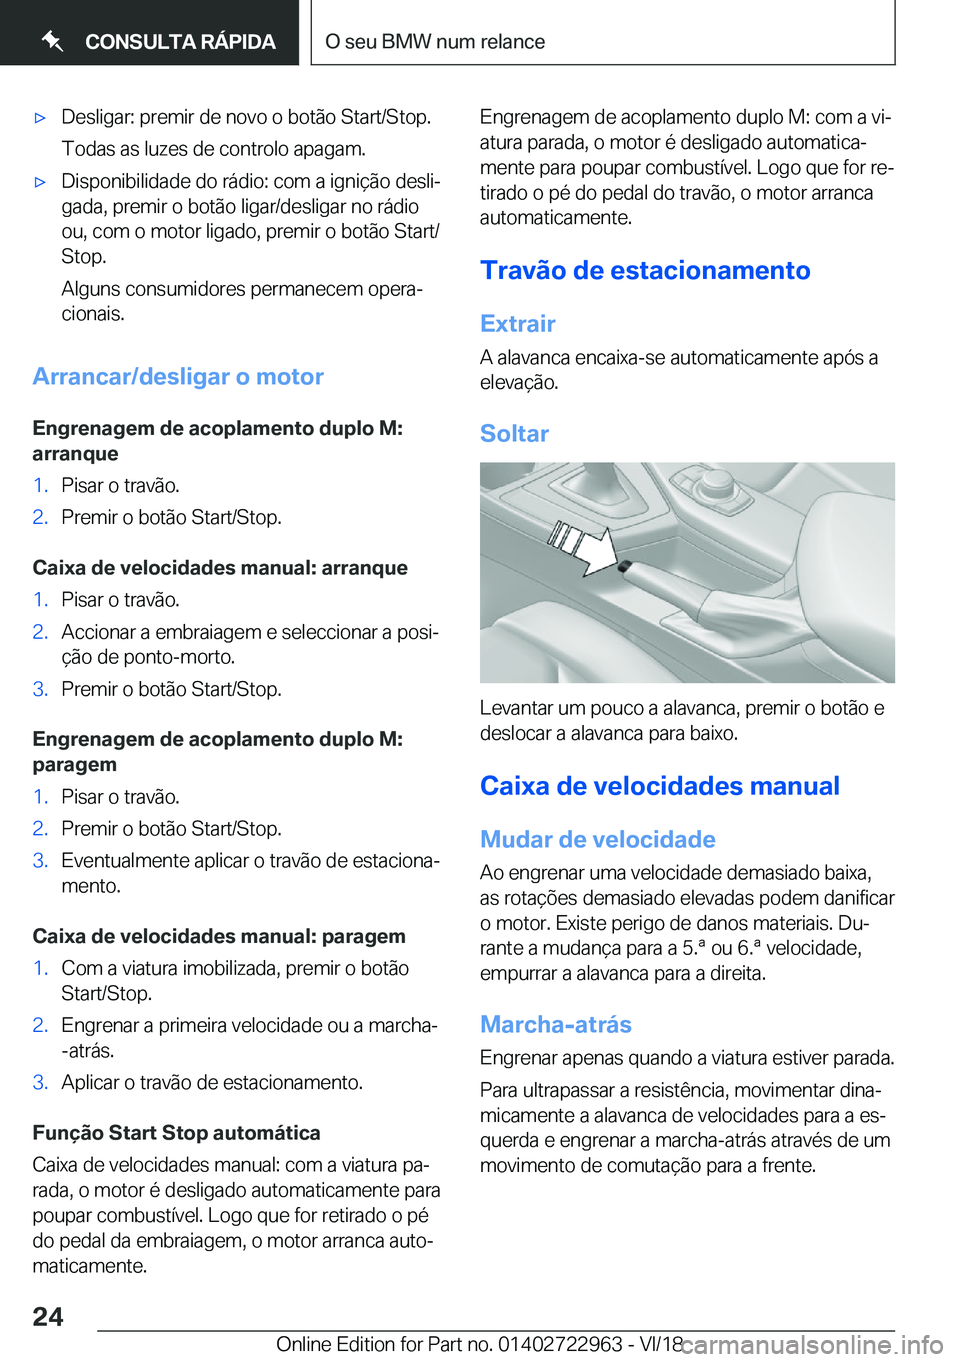 BMW M4 2019  Manual do condutor (in Portuguese) 'x�D�e�s�l�i�g�a�r�:��p�r�e�m�i�r��d�e��n�o�v�o��o��b�o�t�ã�o��S�t�a�r�t�/�S�t�o�p�.�T�o�d�a�s��a�s��l�u�z�e�s��d�e��c�o�n�t�r�o�l�o��a�p�a�g�a�m�.'x�D�i�s�p�o�n�i�b�i�l�i�d�a�d�e�